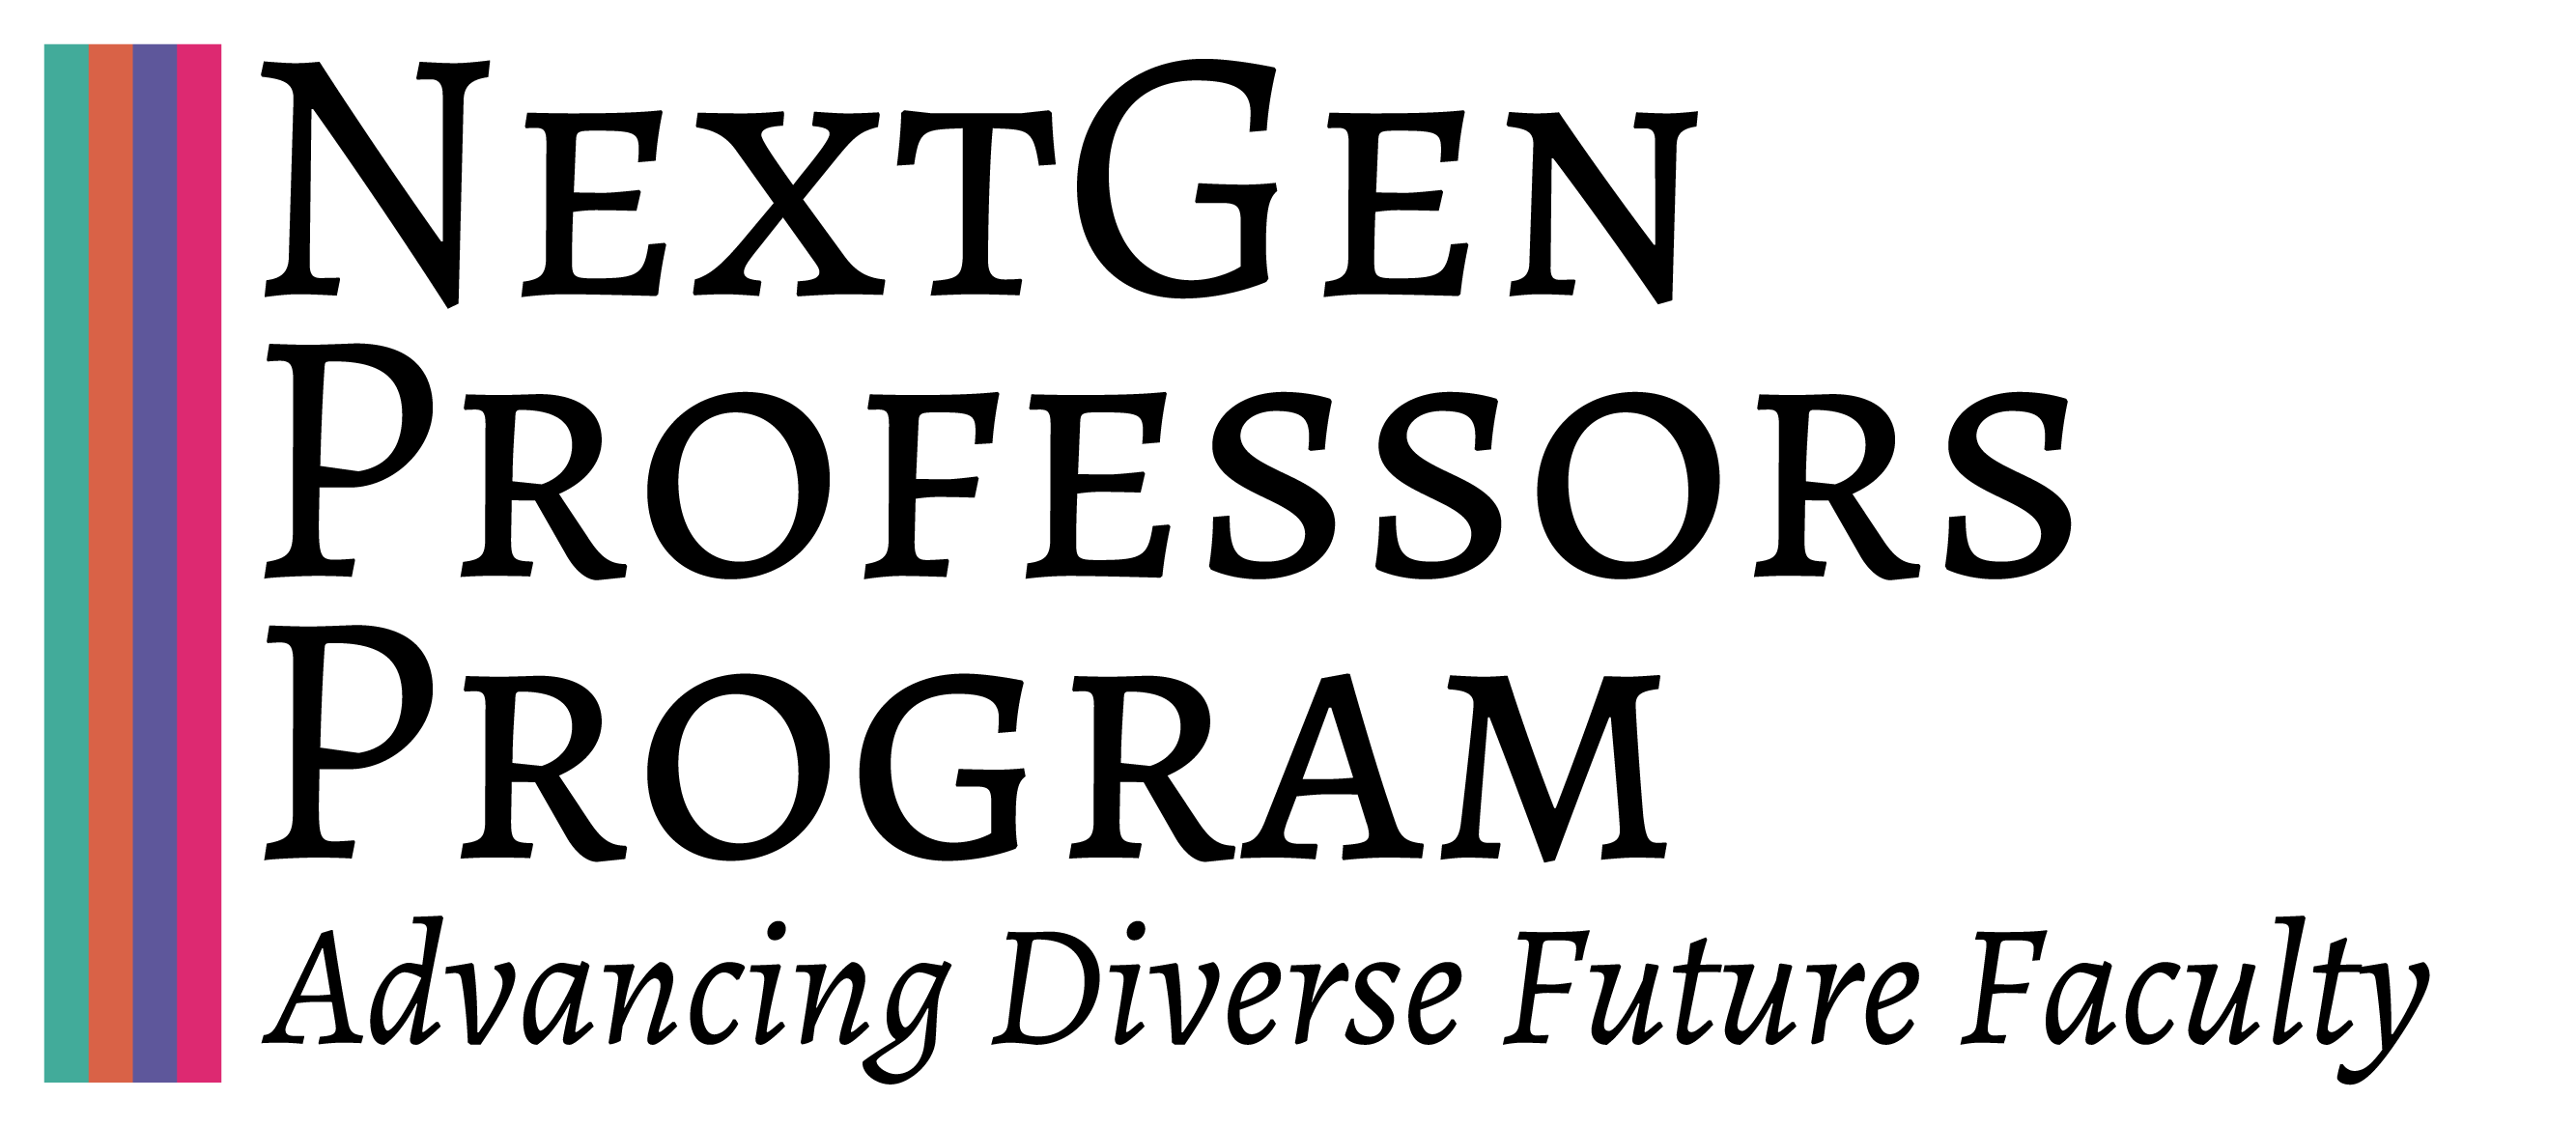 NextGen Professors logo, subtitled Advancing Diverse Future Faculty